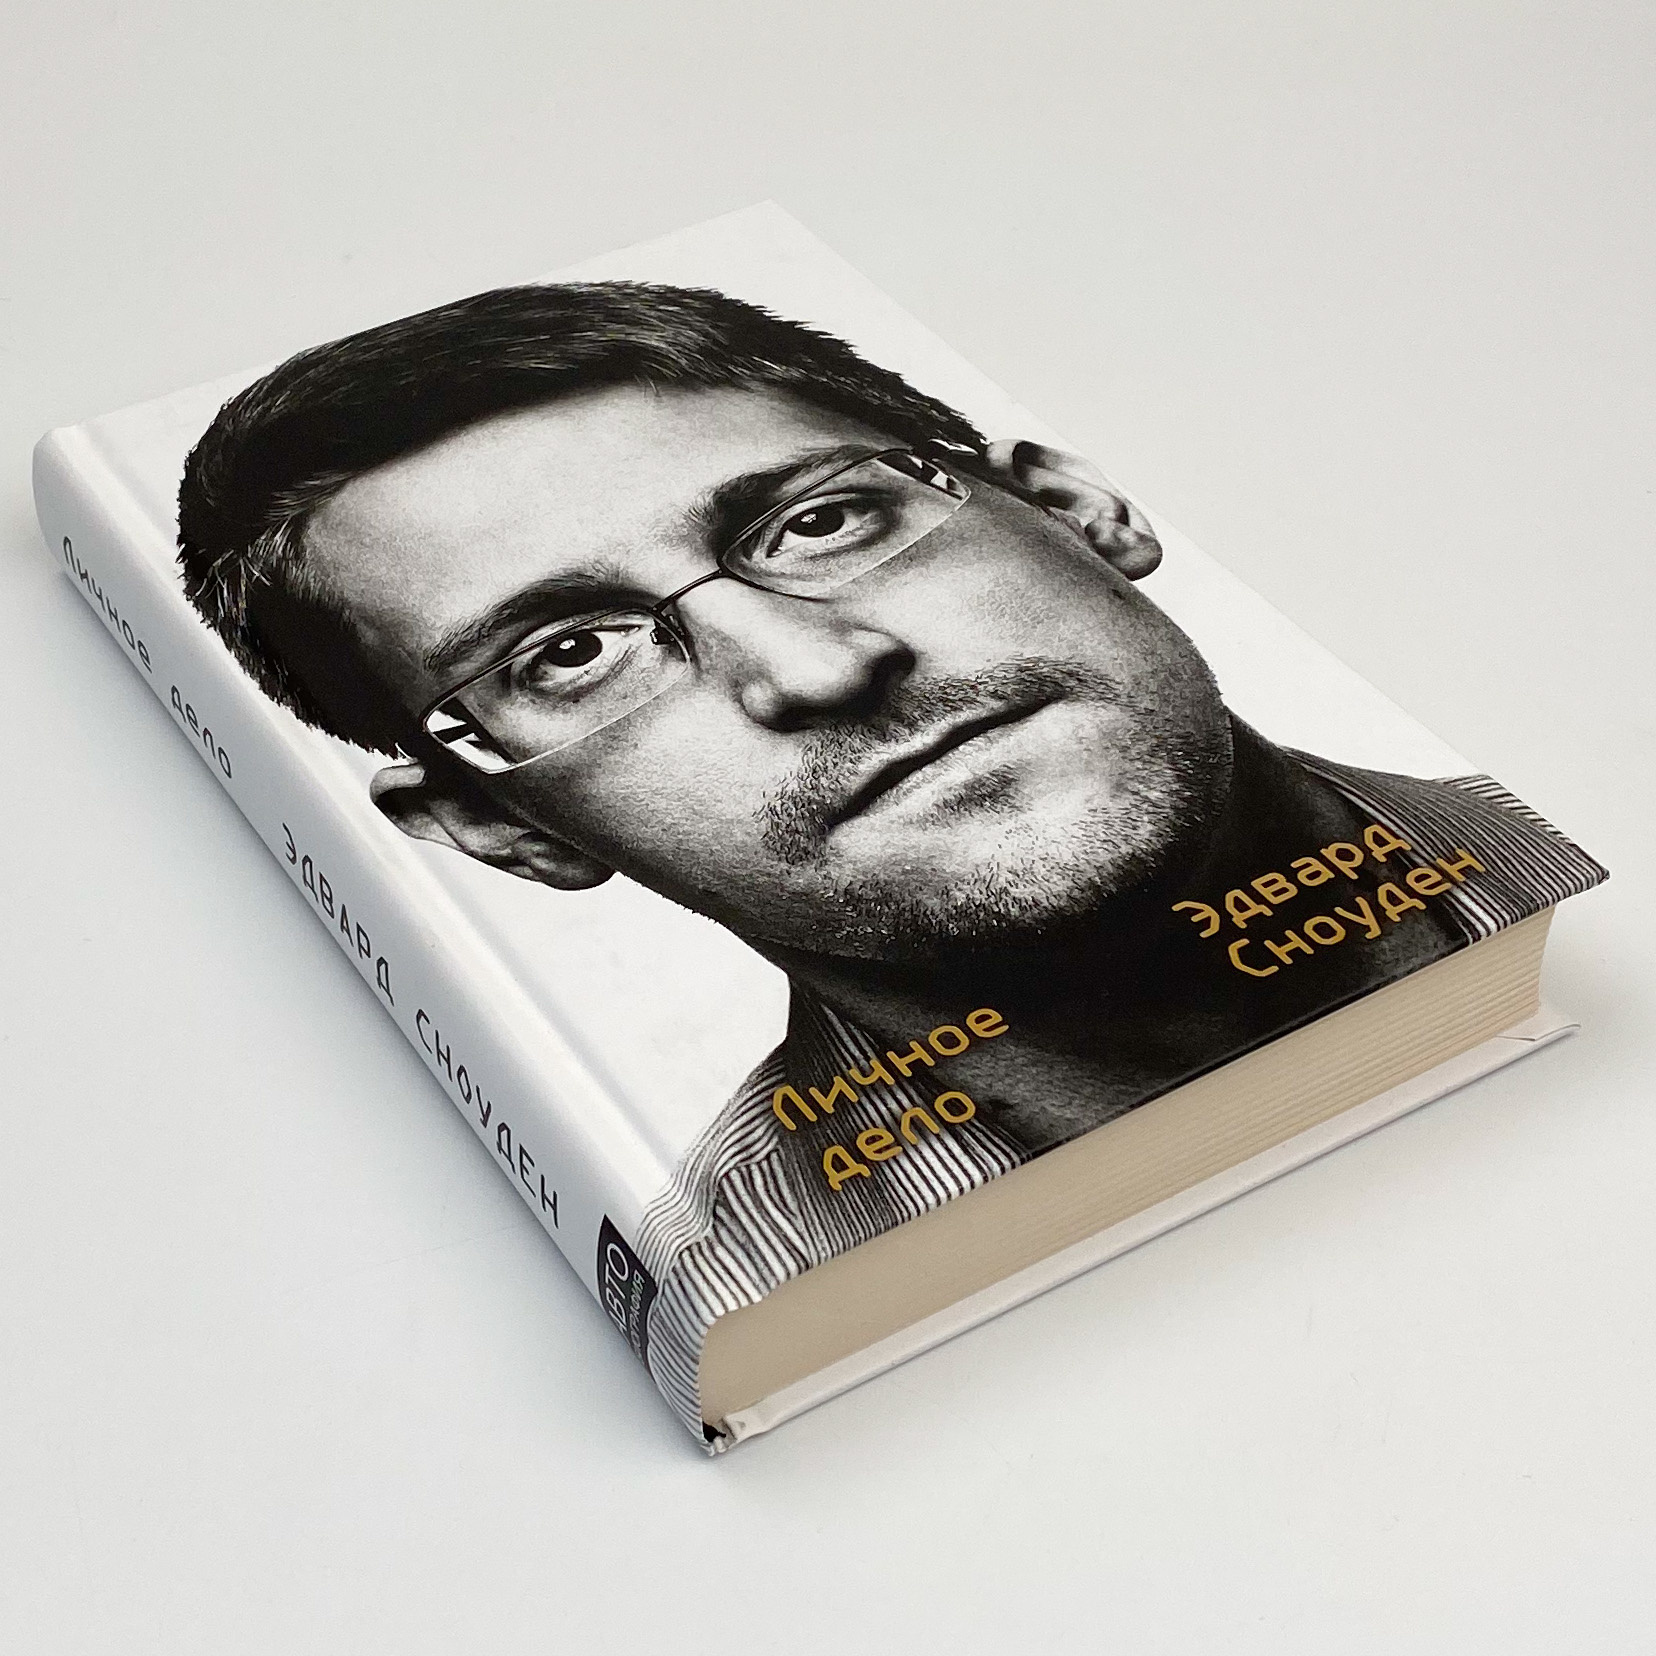 Эдвард Сноуден. Личное дело. Автор — Эдвард Сноуден. 